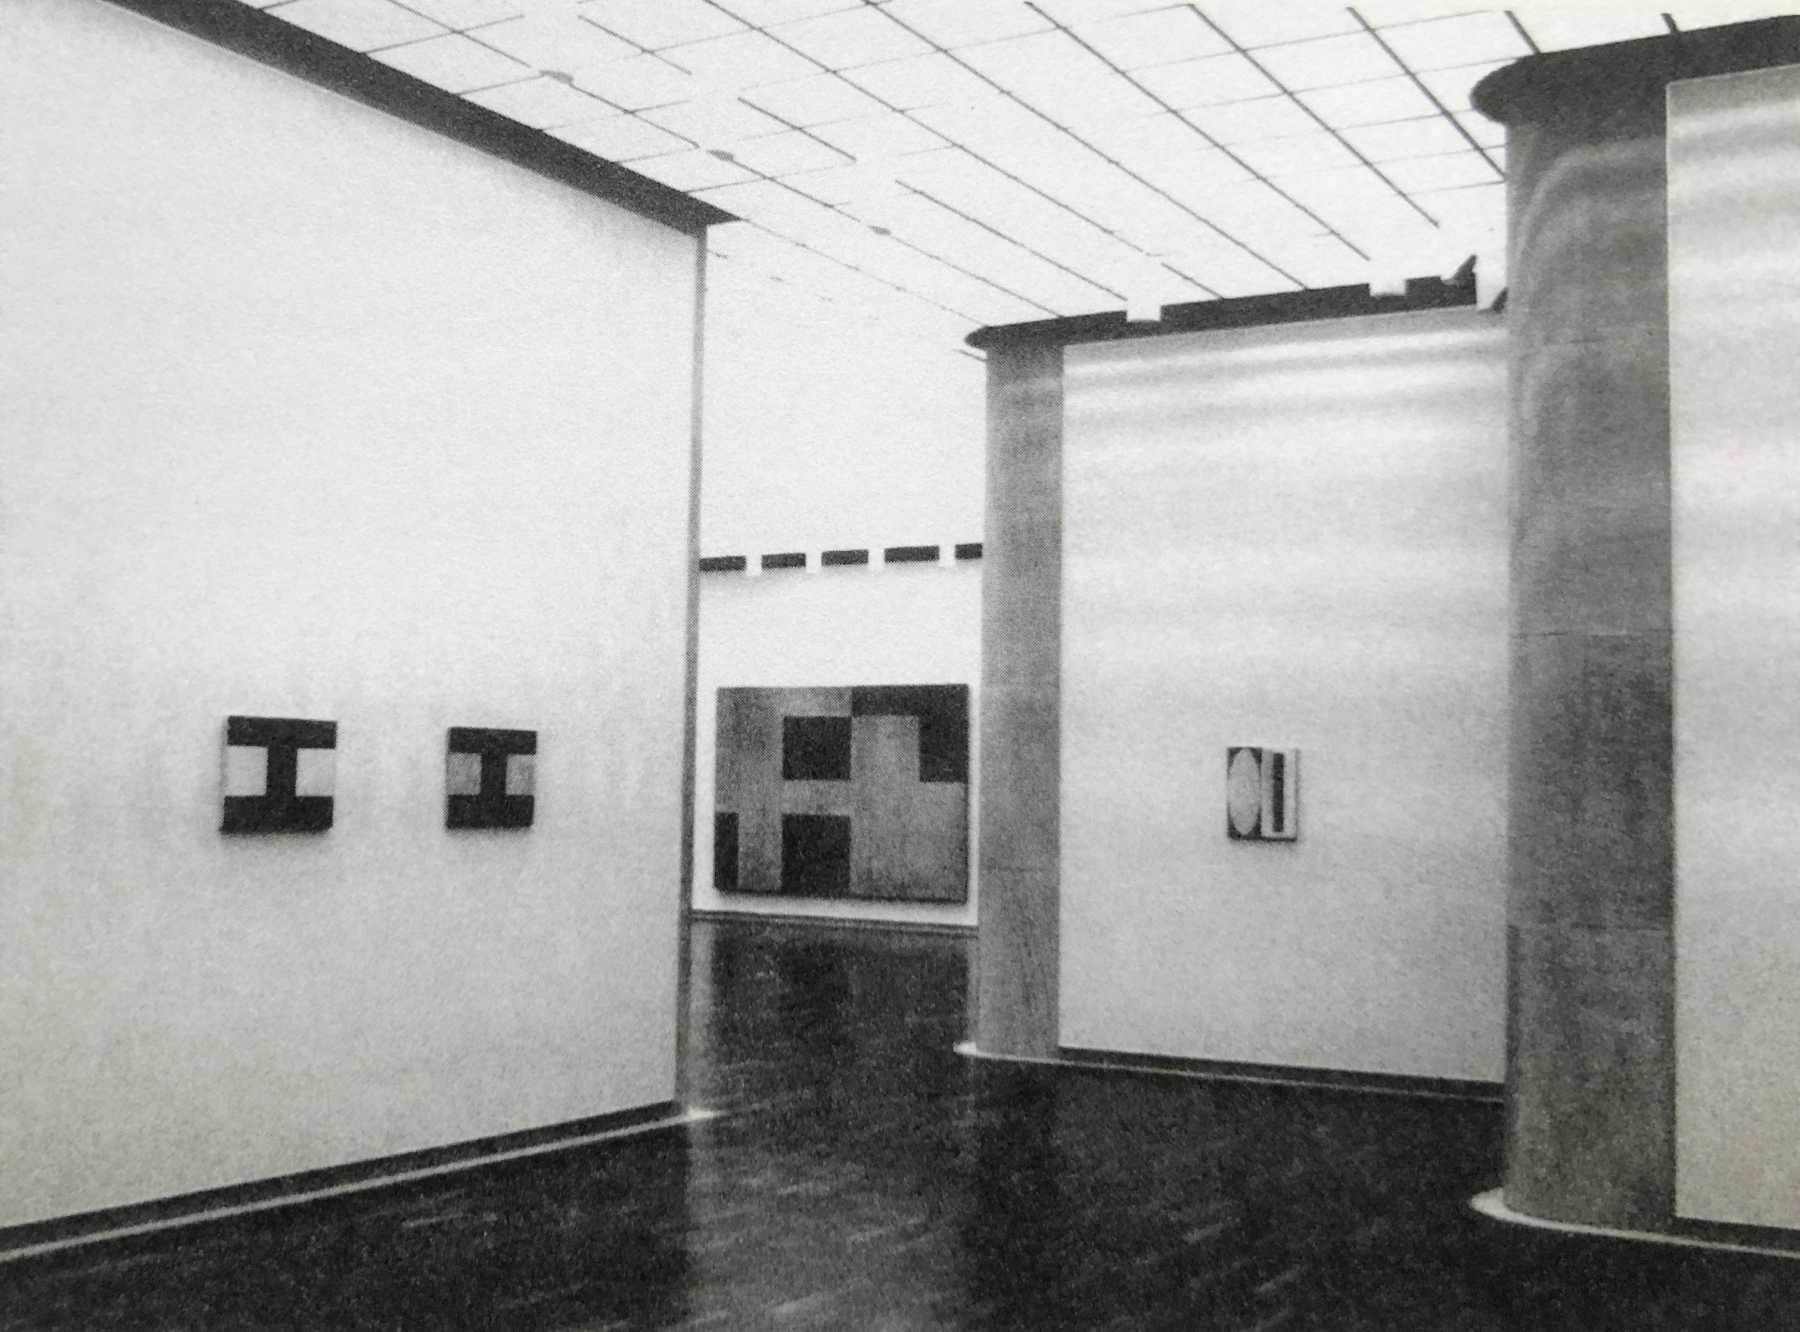 Installation of Helmut&nbsp;Federle&nbsp;&ndash; Bilder und Zeichnungen 1975&ndash;1988, Kunsthalle Bielefeld, Germany, 1989

&nbsp;